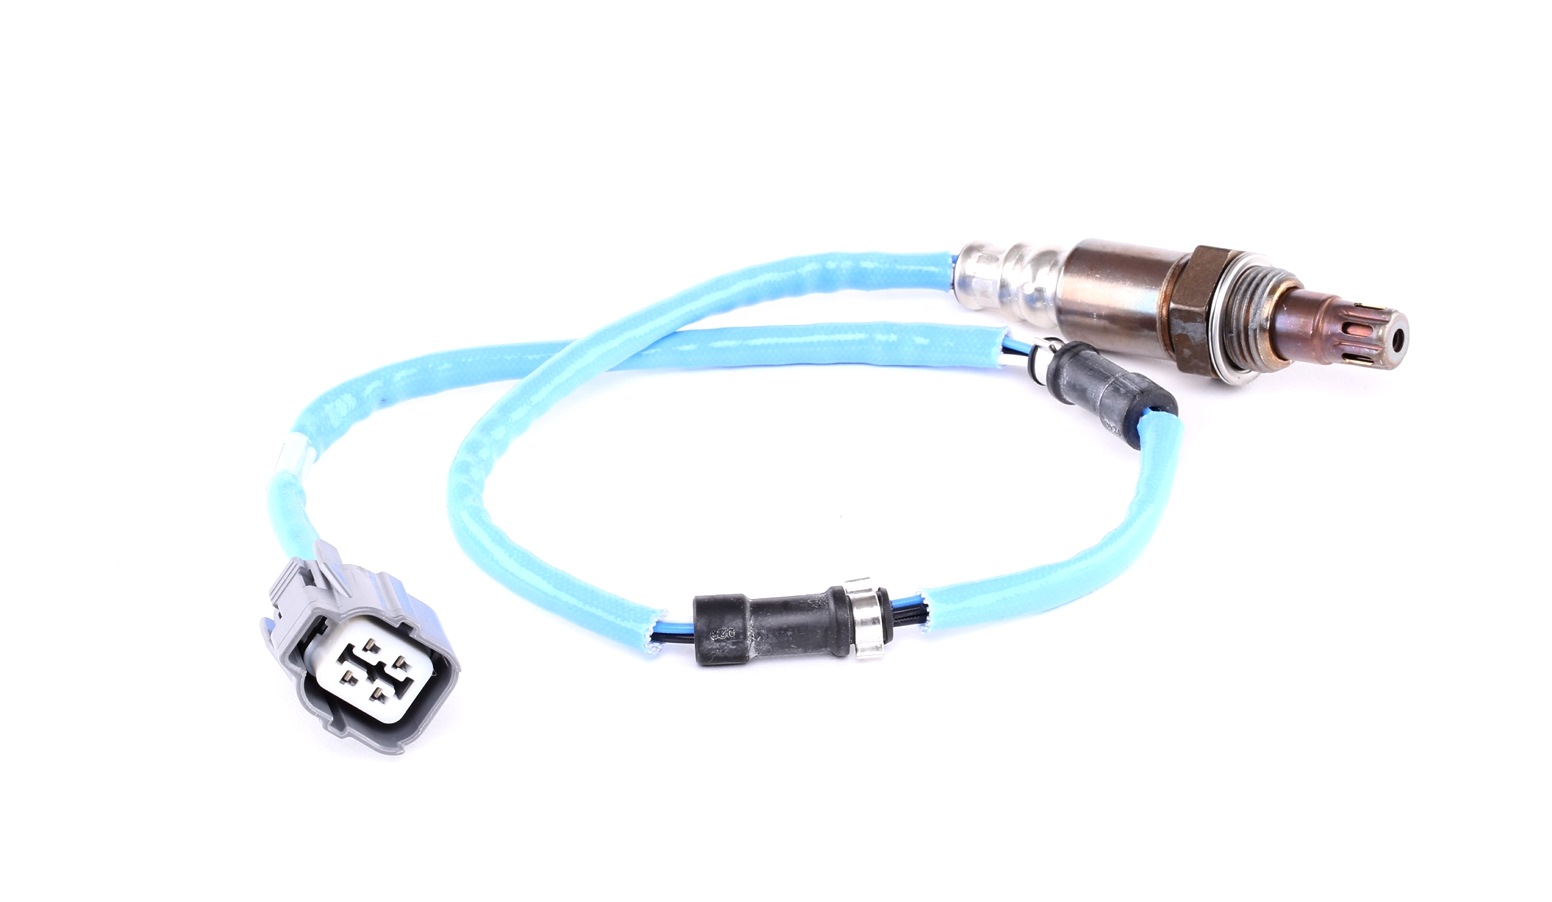 DOX-1424 Genuine OE Denso Direct Fit Pre-Catalyst O2 Oxygen Lambda Sensor 